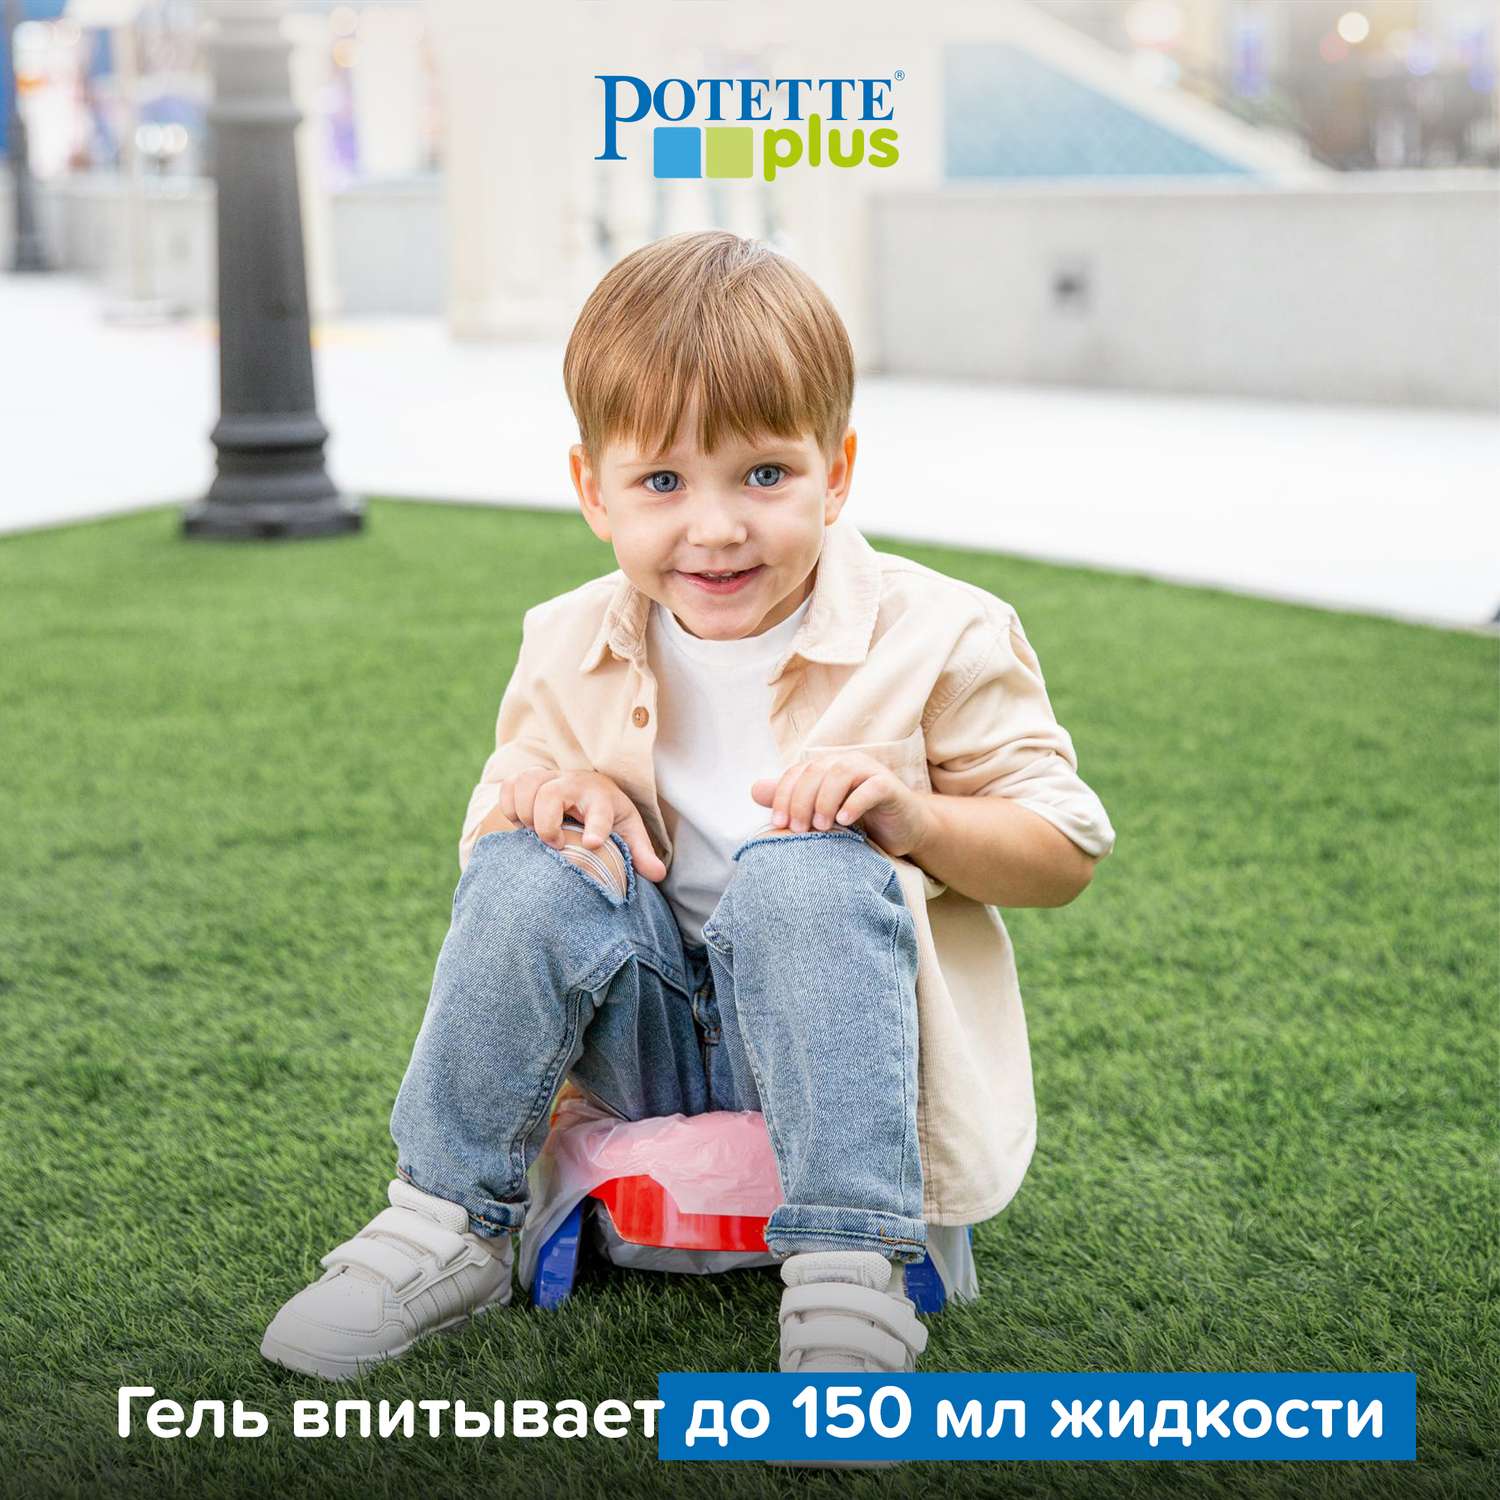 Пакеты Potette Plus для дорожных горшков сменные одноразовые 30 шт - фото 5